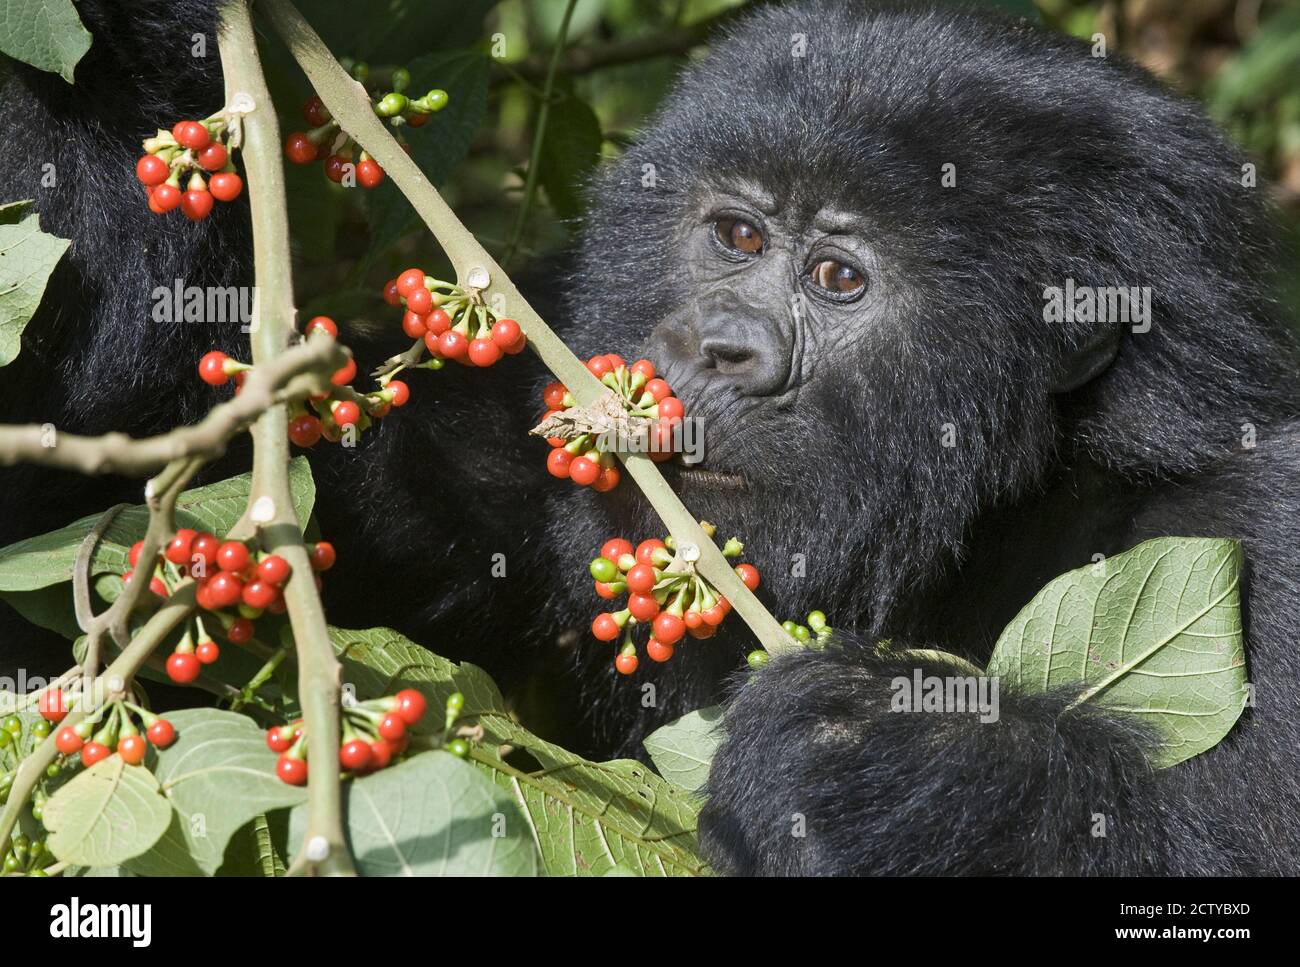 Mountain gorilla (Gorilla beringei beringei) eating cherries, Rwanda Stock Photo